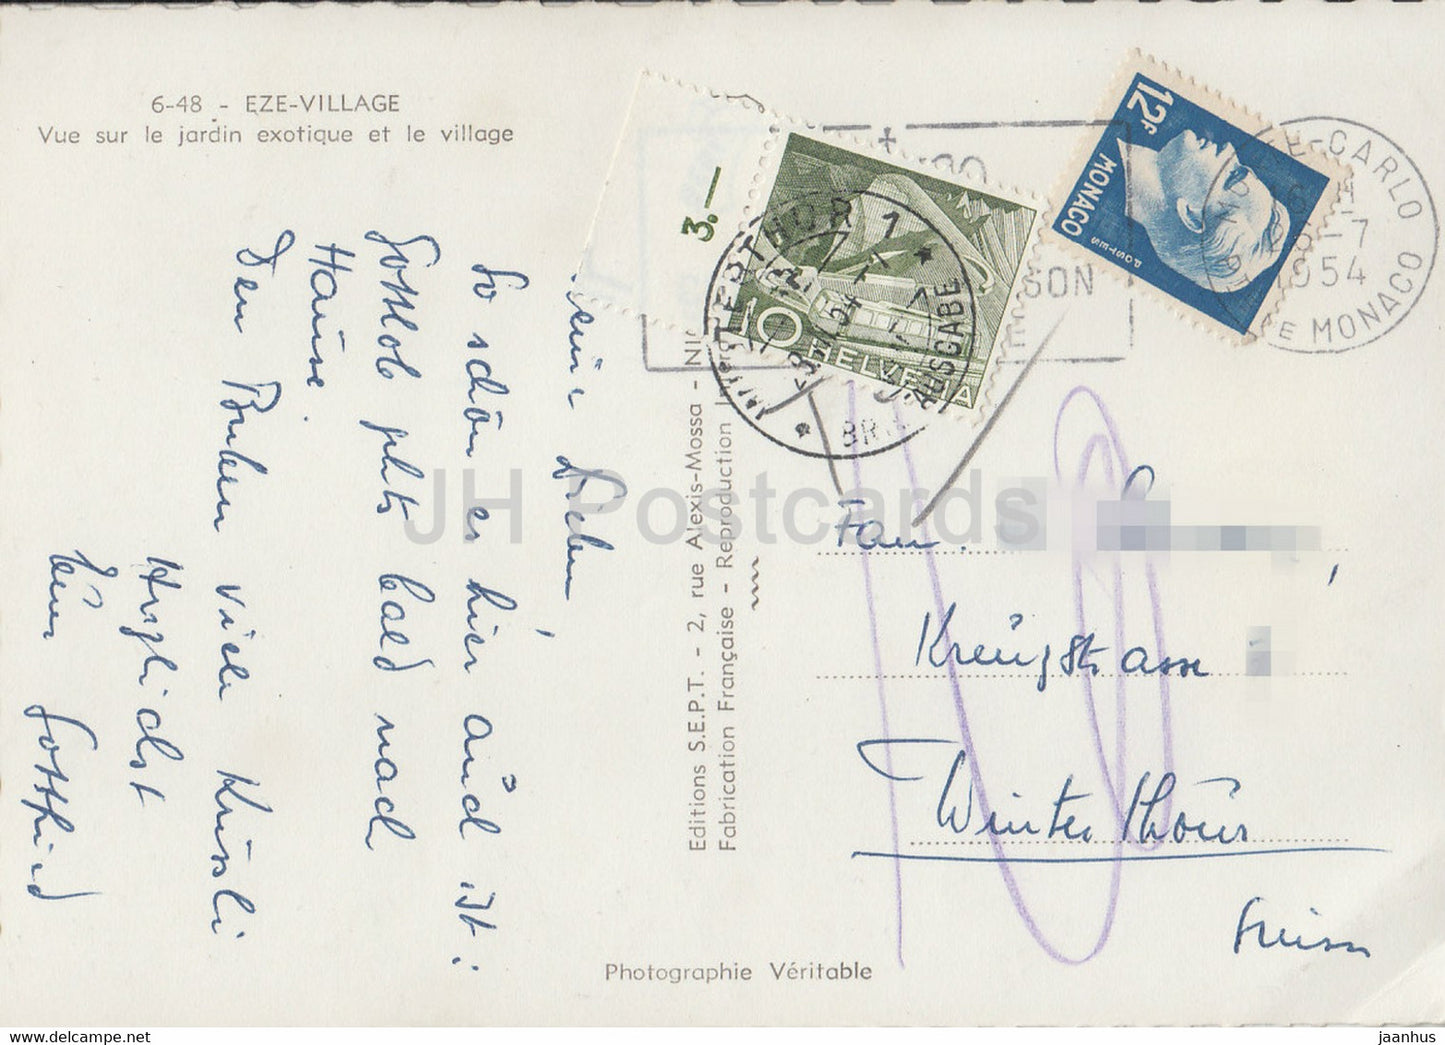 Eze Village – Vue Sur le Jardin exotique et le village – alte Postkarte – 1954 – Frankreich – gebraucht